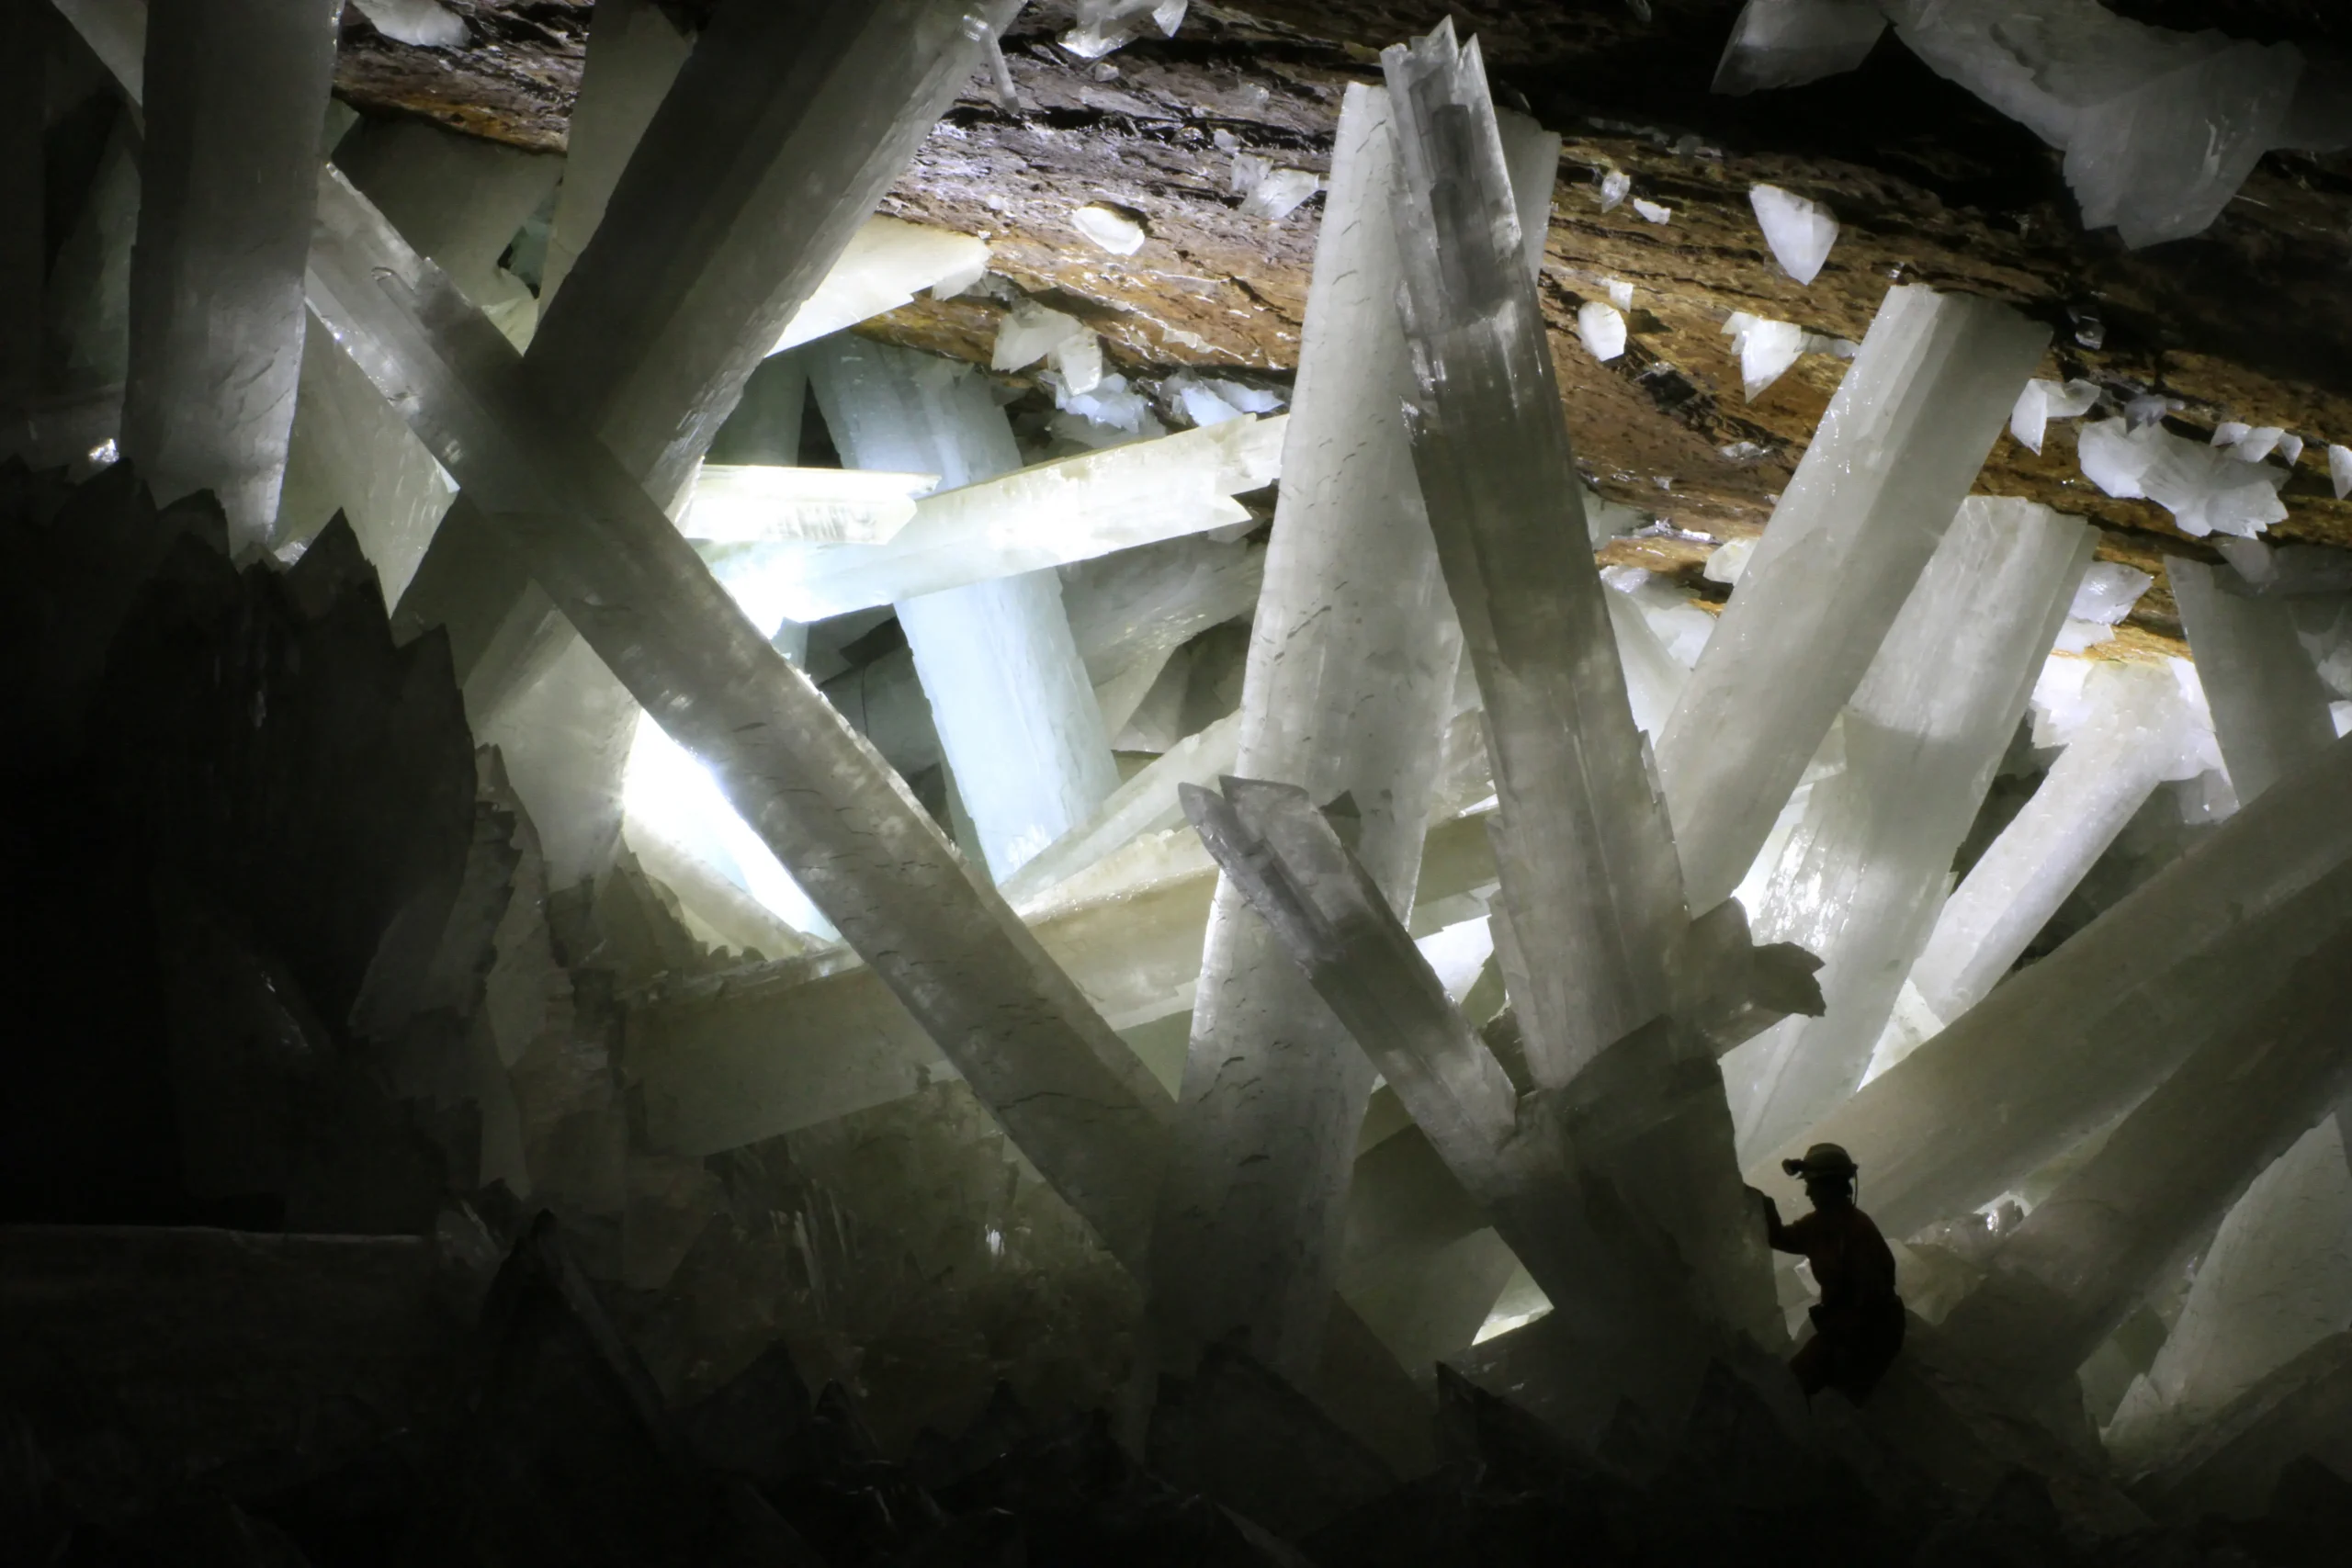 la cueva de los cristales en méxico - Qué cristales hay en la cueva de Naica